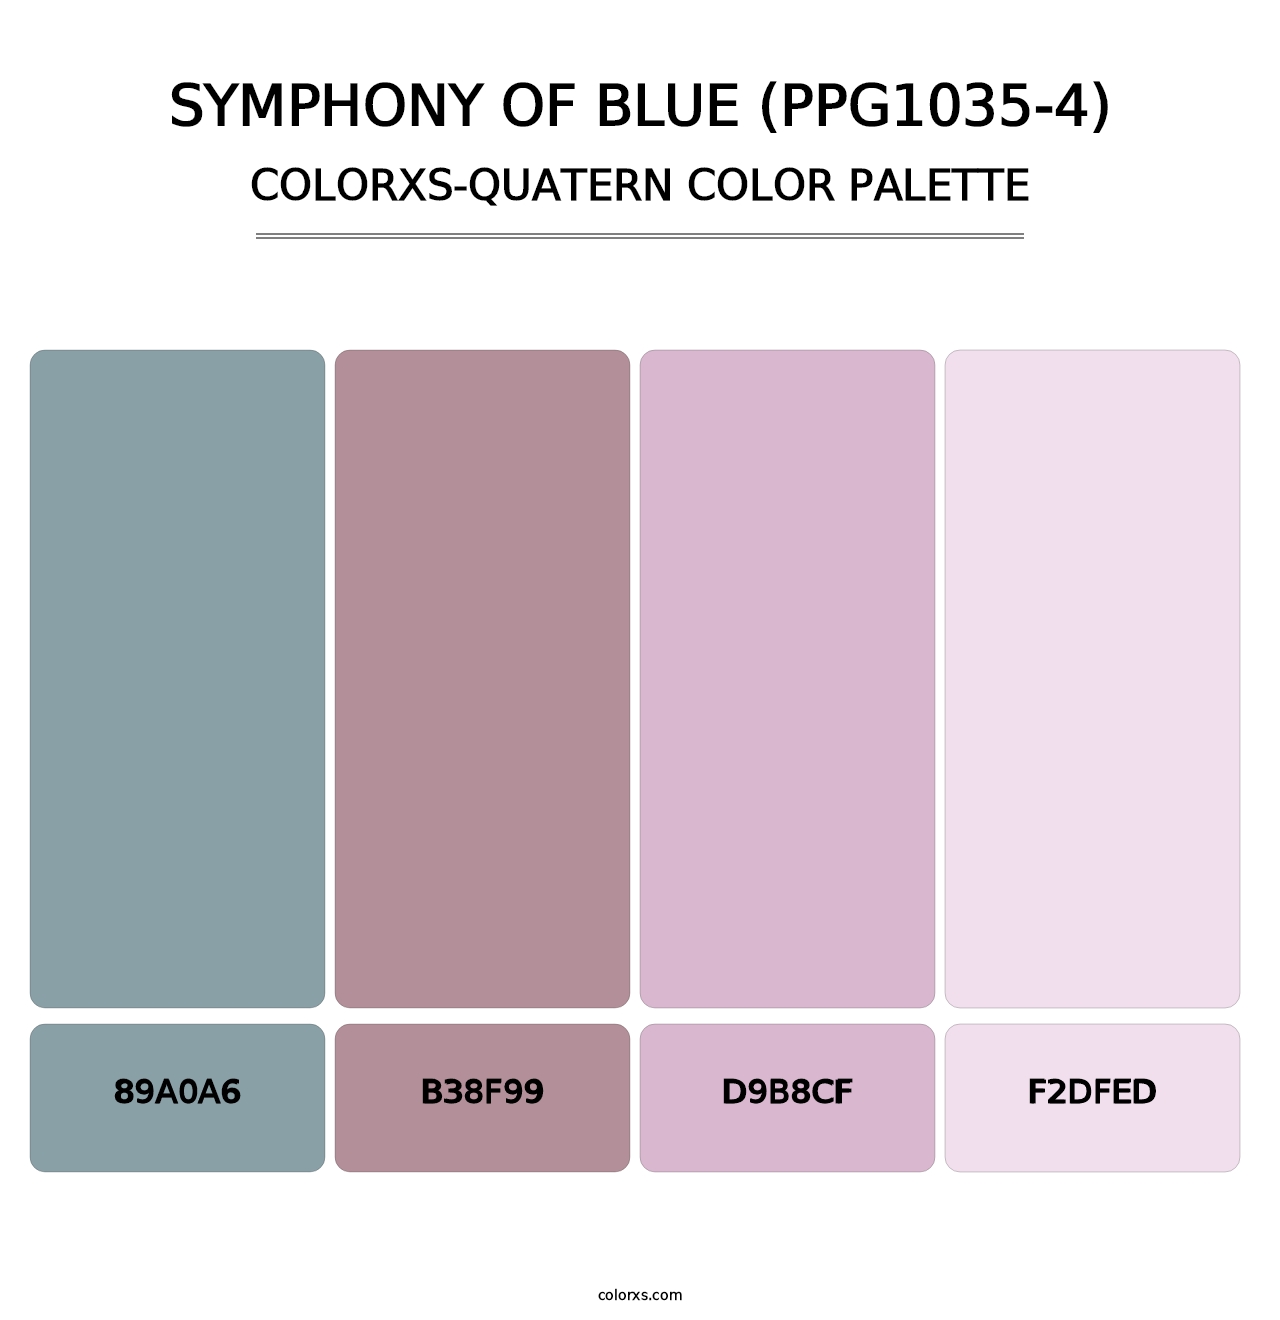 Symphony Of Blue (PPG1035-4) - Colorxs Quatern Palette